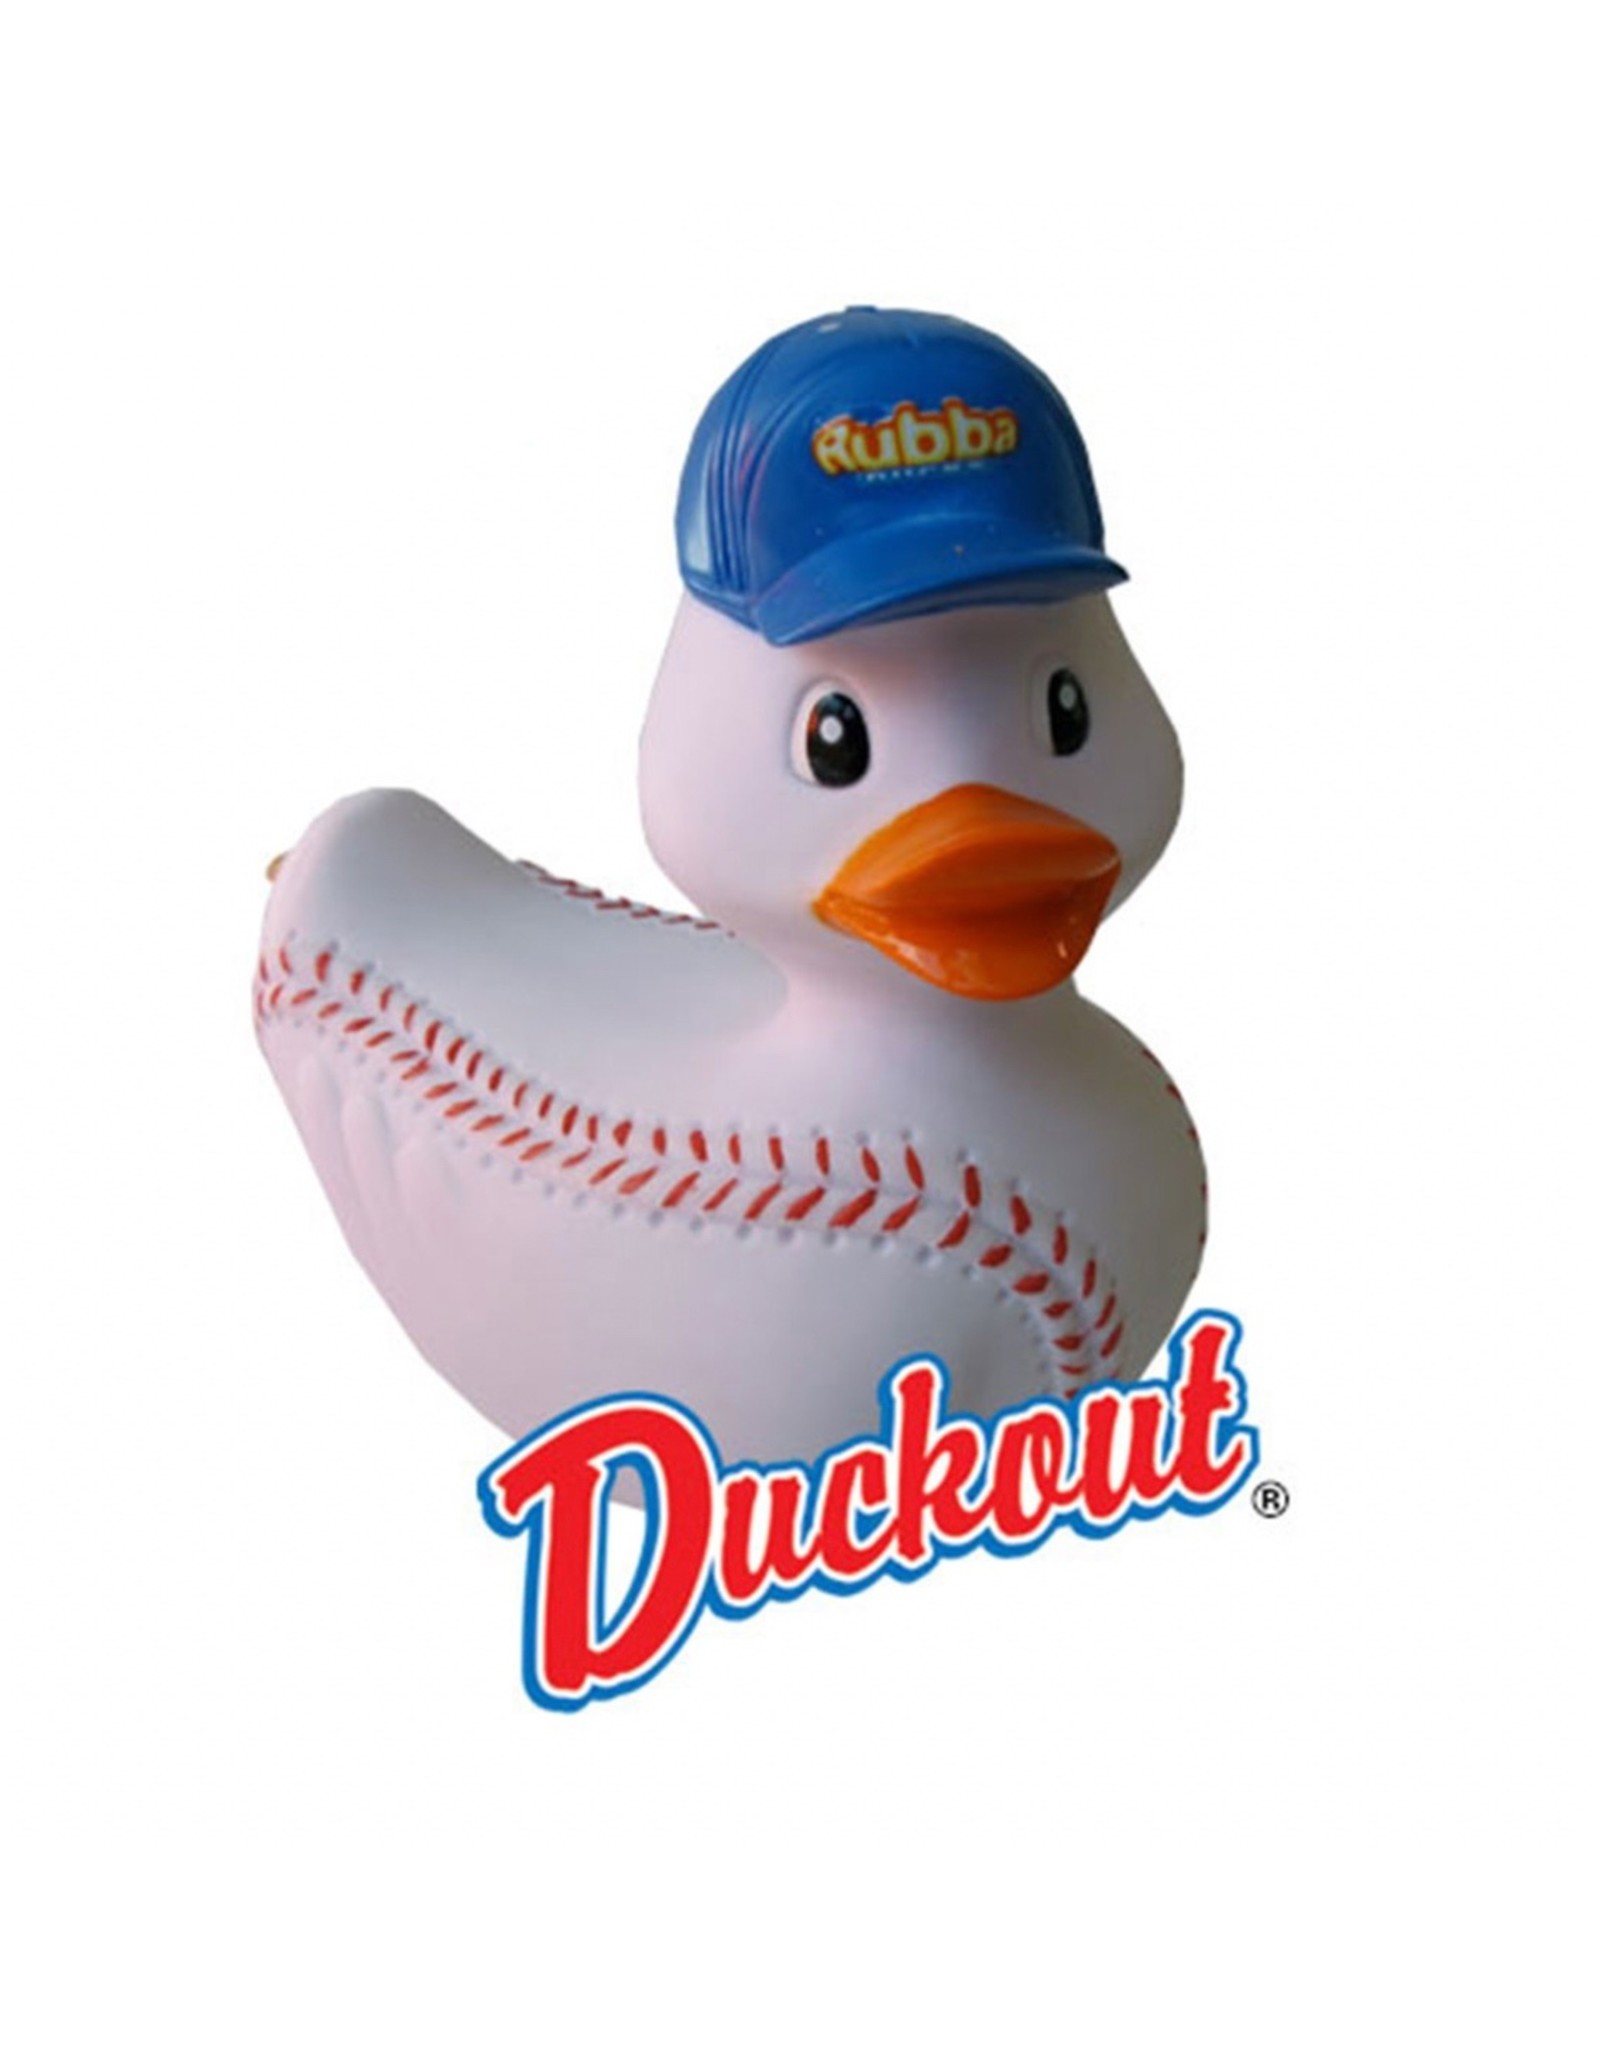 Canard "Duckout" le canard base-ball